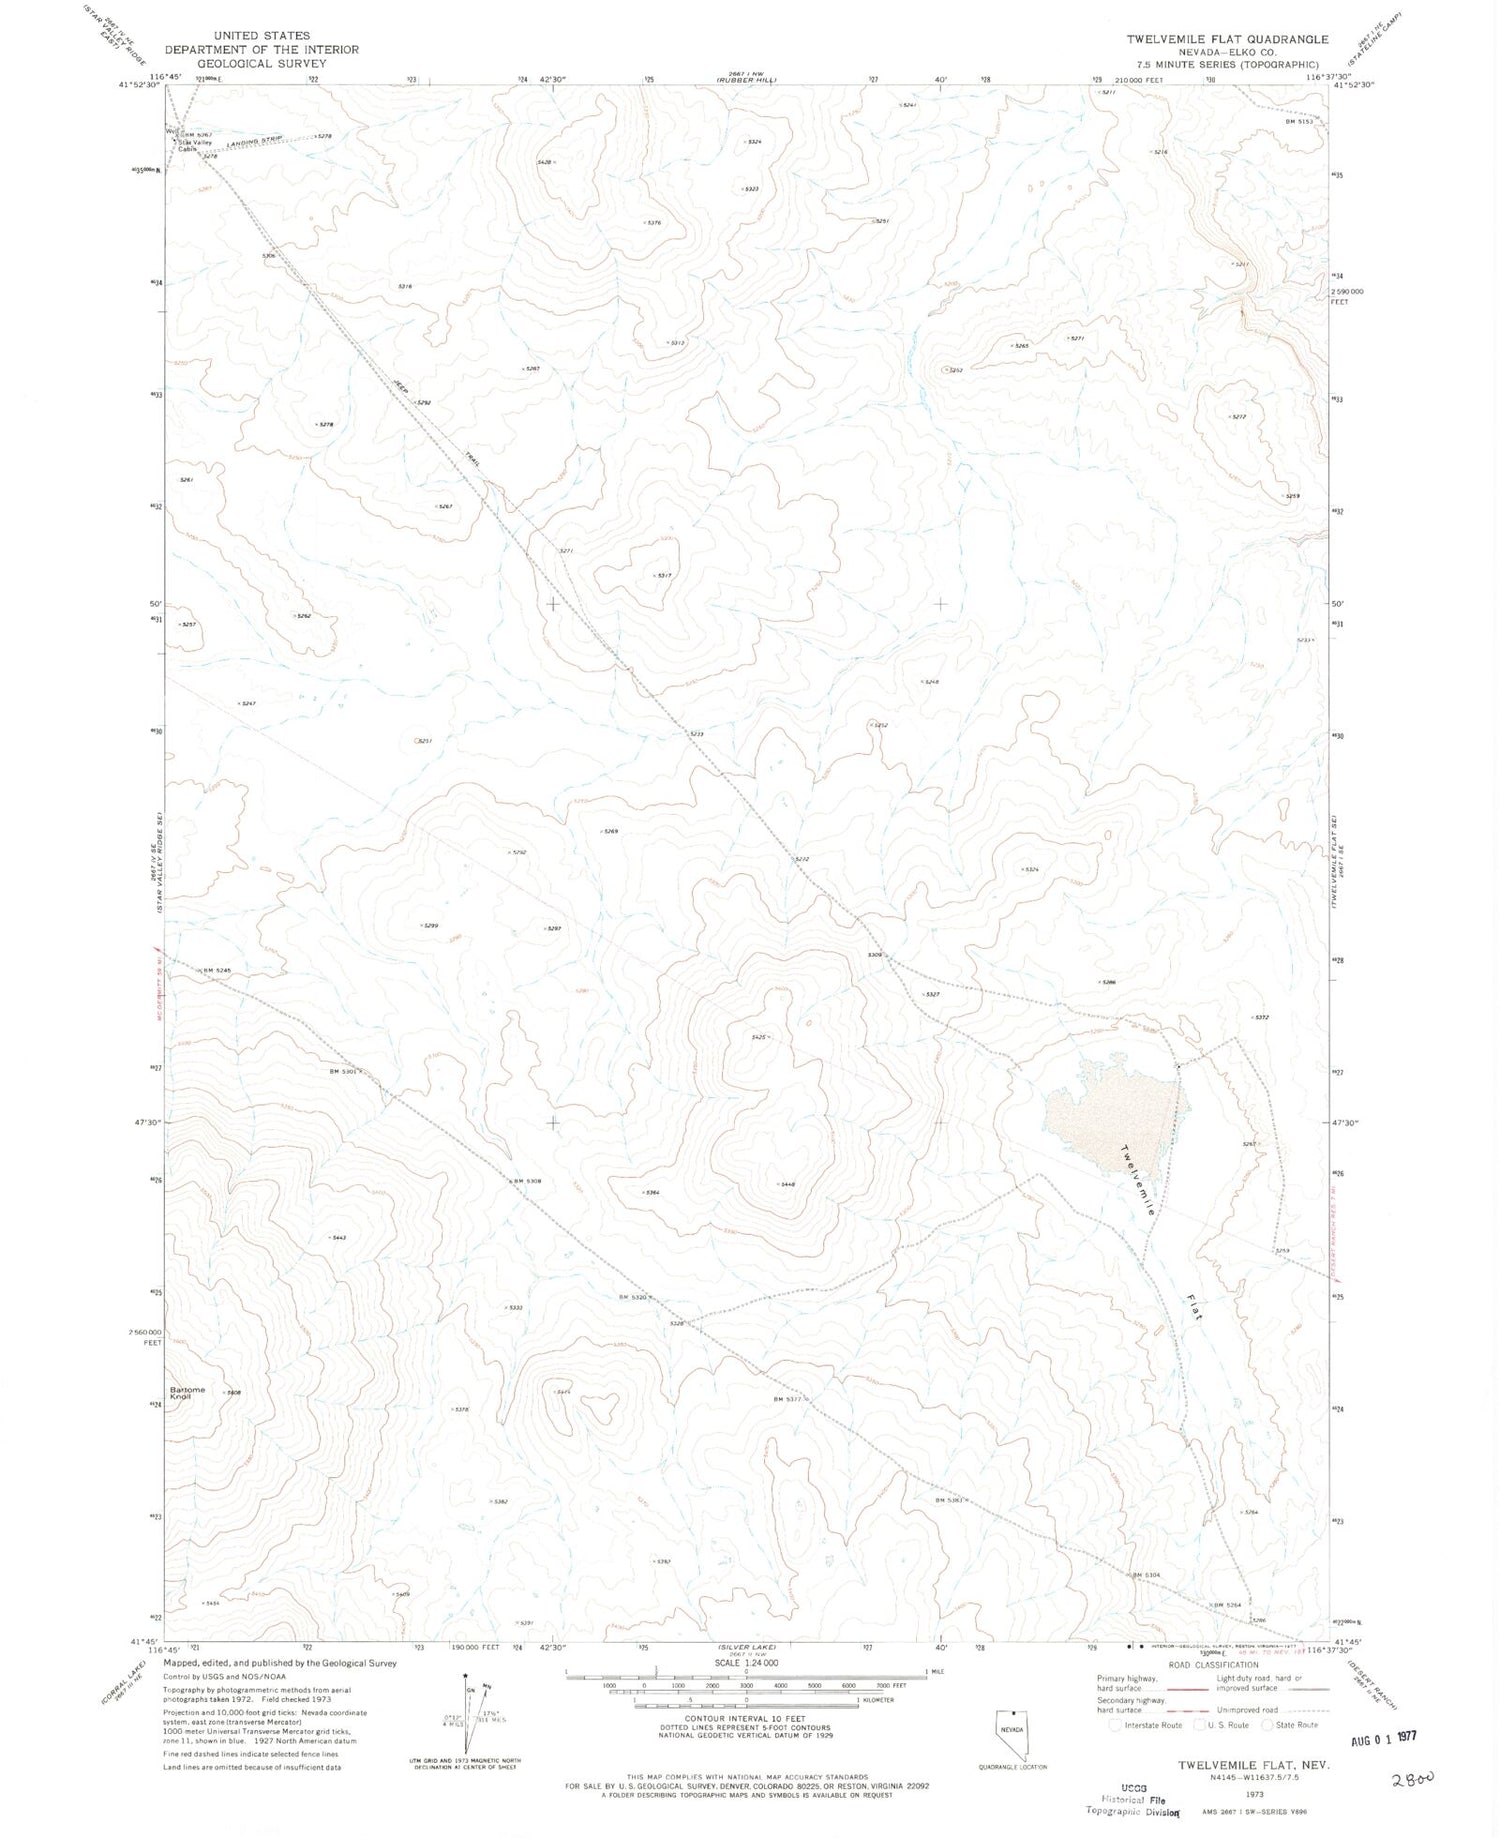 Classic USGS Twelvemile Flat Nevada 7.5'x7.5' Topo Map Image